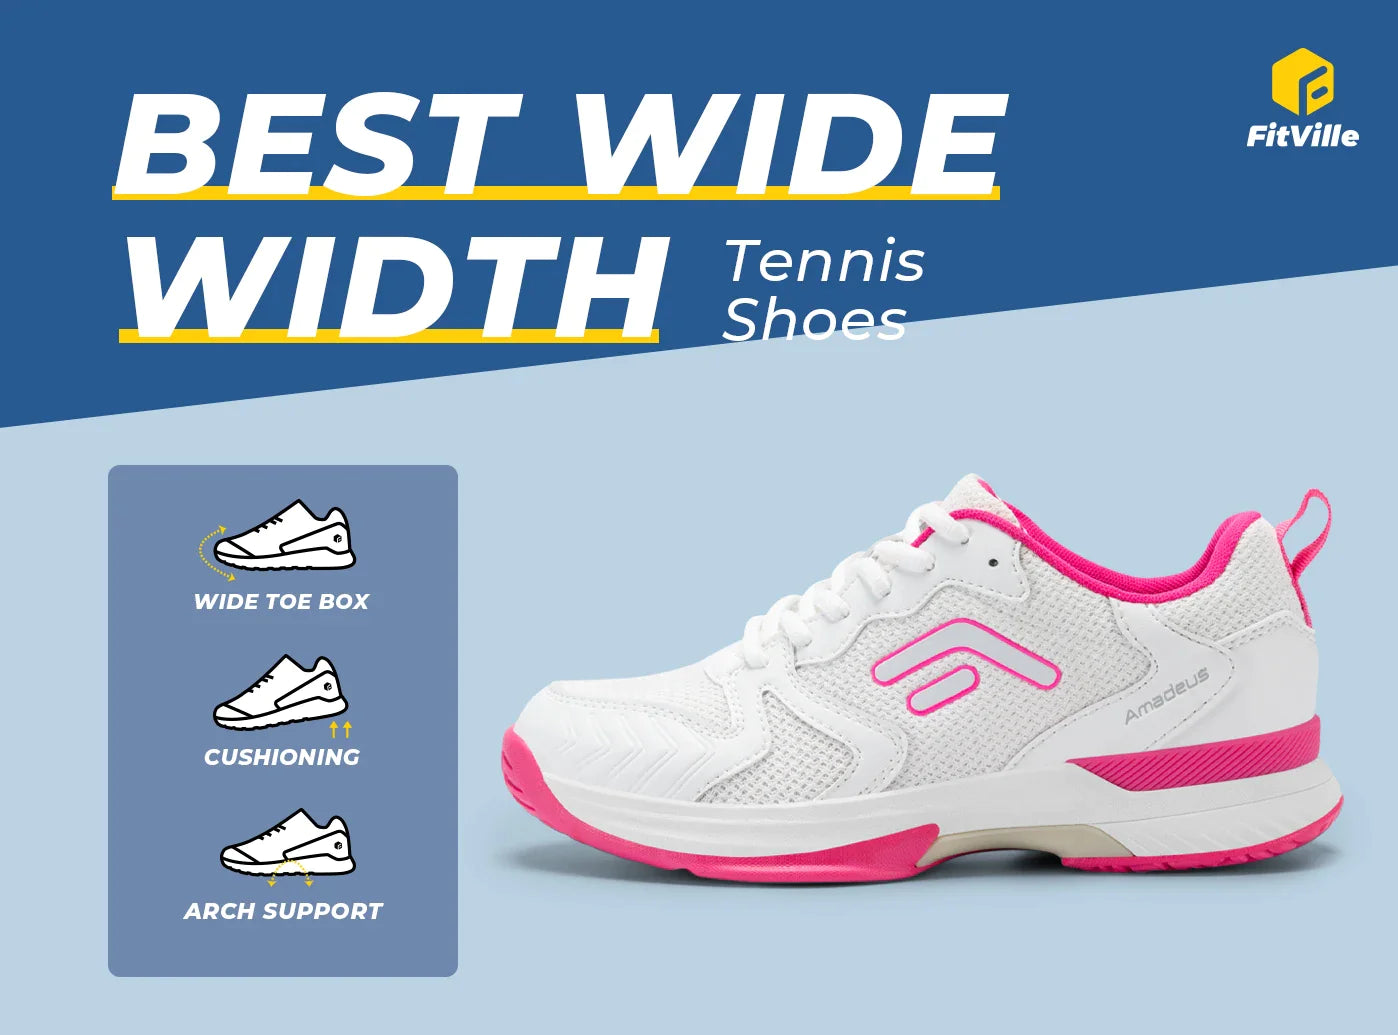 FitVille Women's Amadeus Tennis & Pickleball Court Shoes V4-3